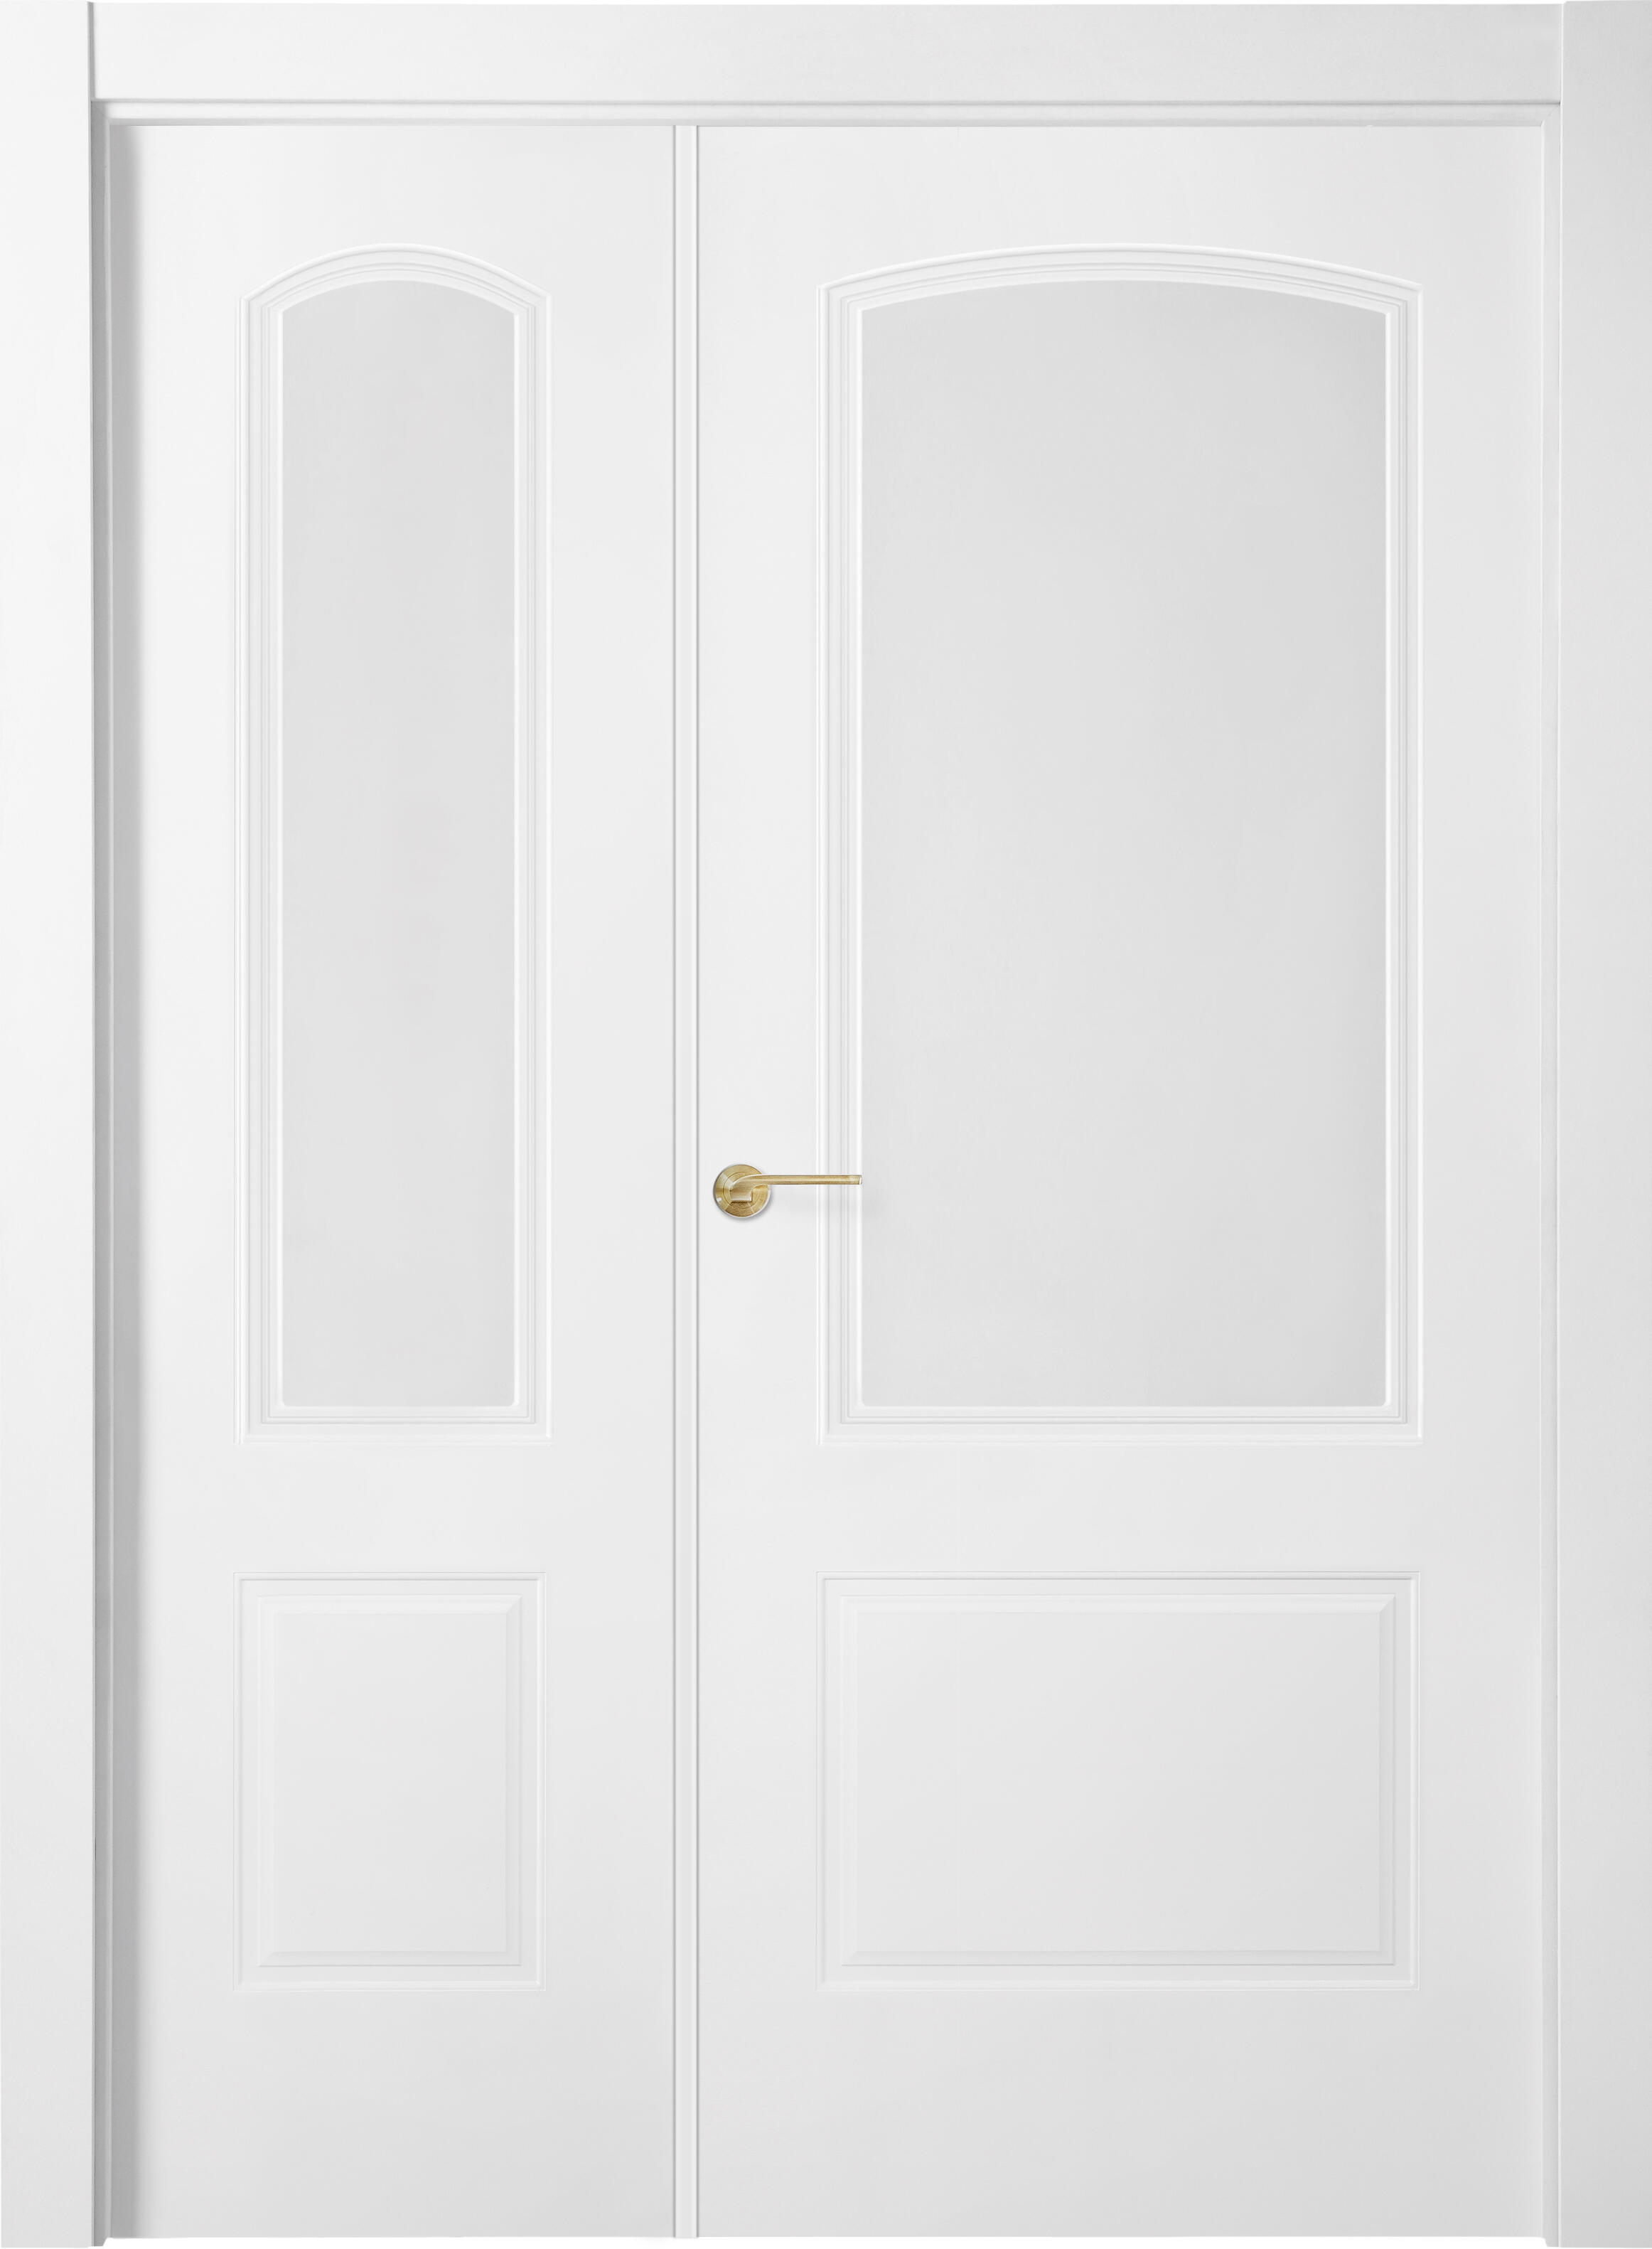 Puerta berlin plus blanco apertura derecha con cristal 125cm